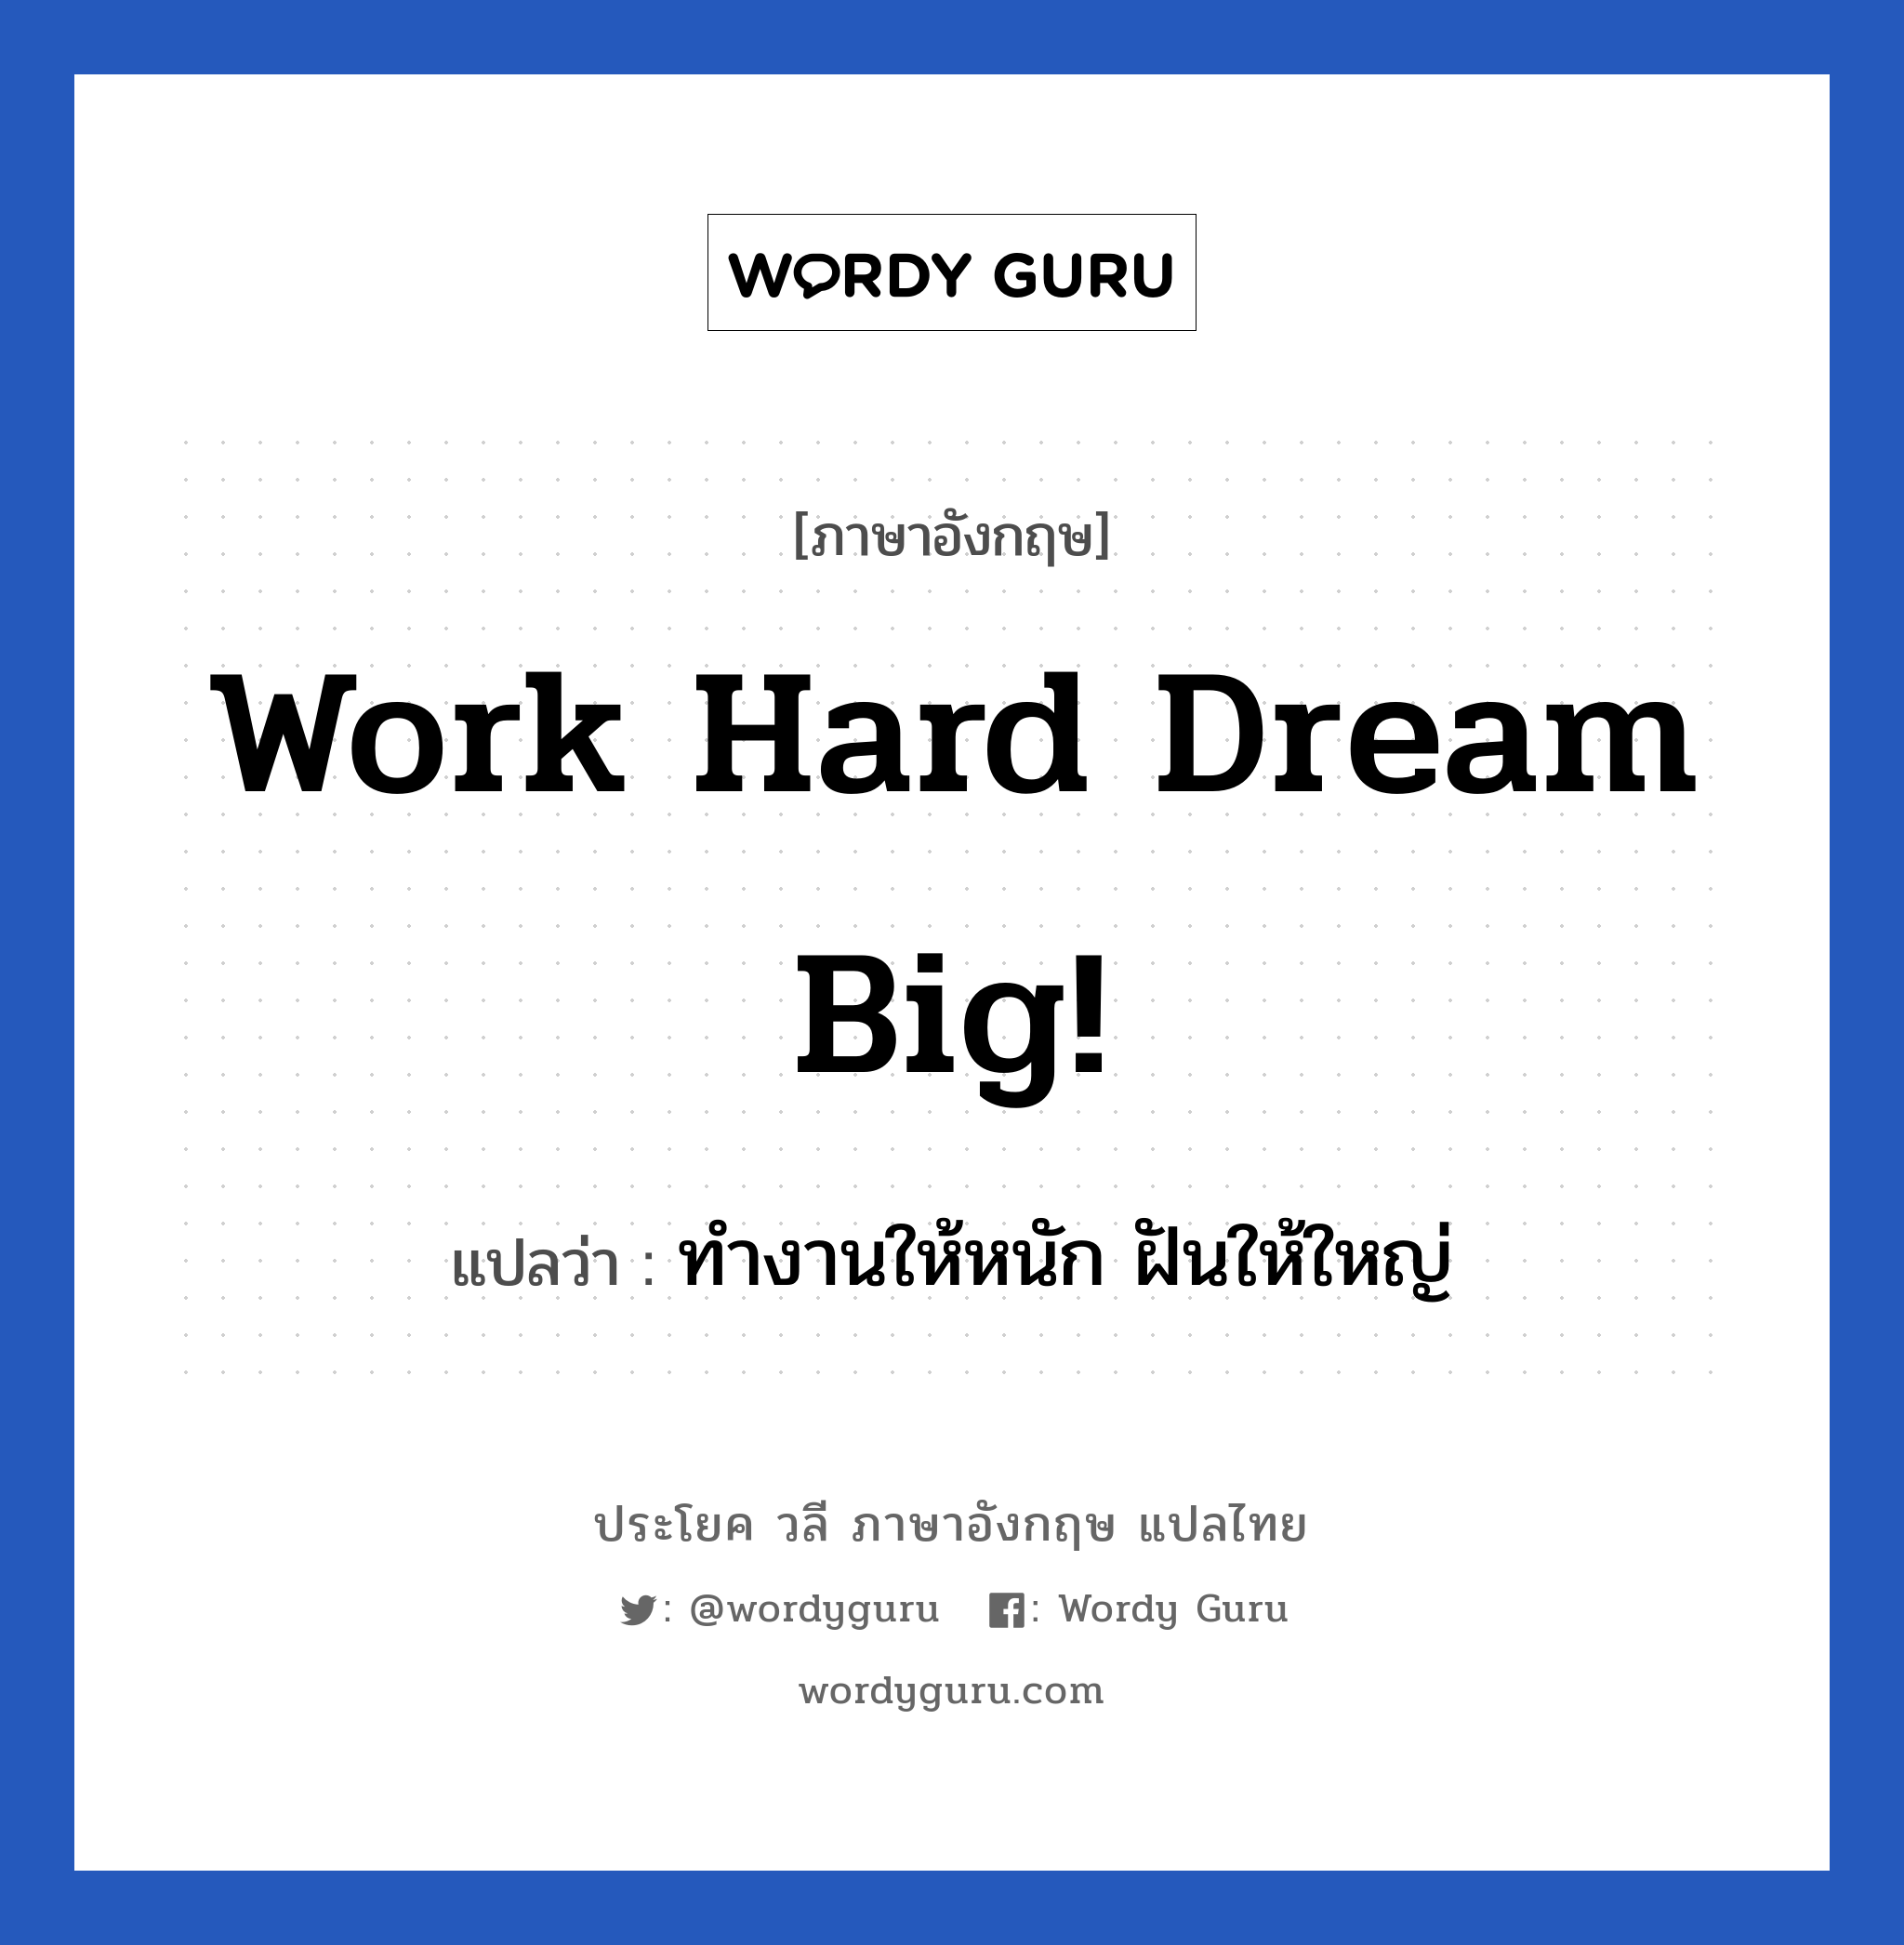 ทำงานให้หนัก ฝันให้ใหญ่ ภาษาอังกฤษ?, วลีภาษาอังกฤษ ทำงานให้หนัก ฝันให้ใหญ่ แปลว่า Work hard Dream big! หมวด ในที่ทำงาน